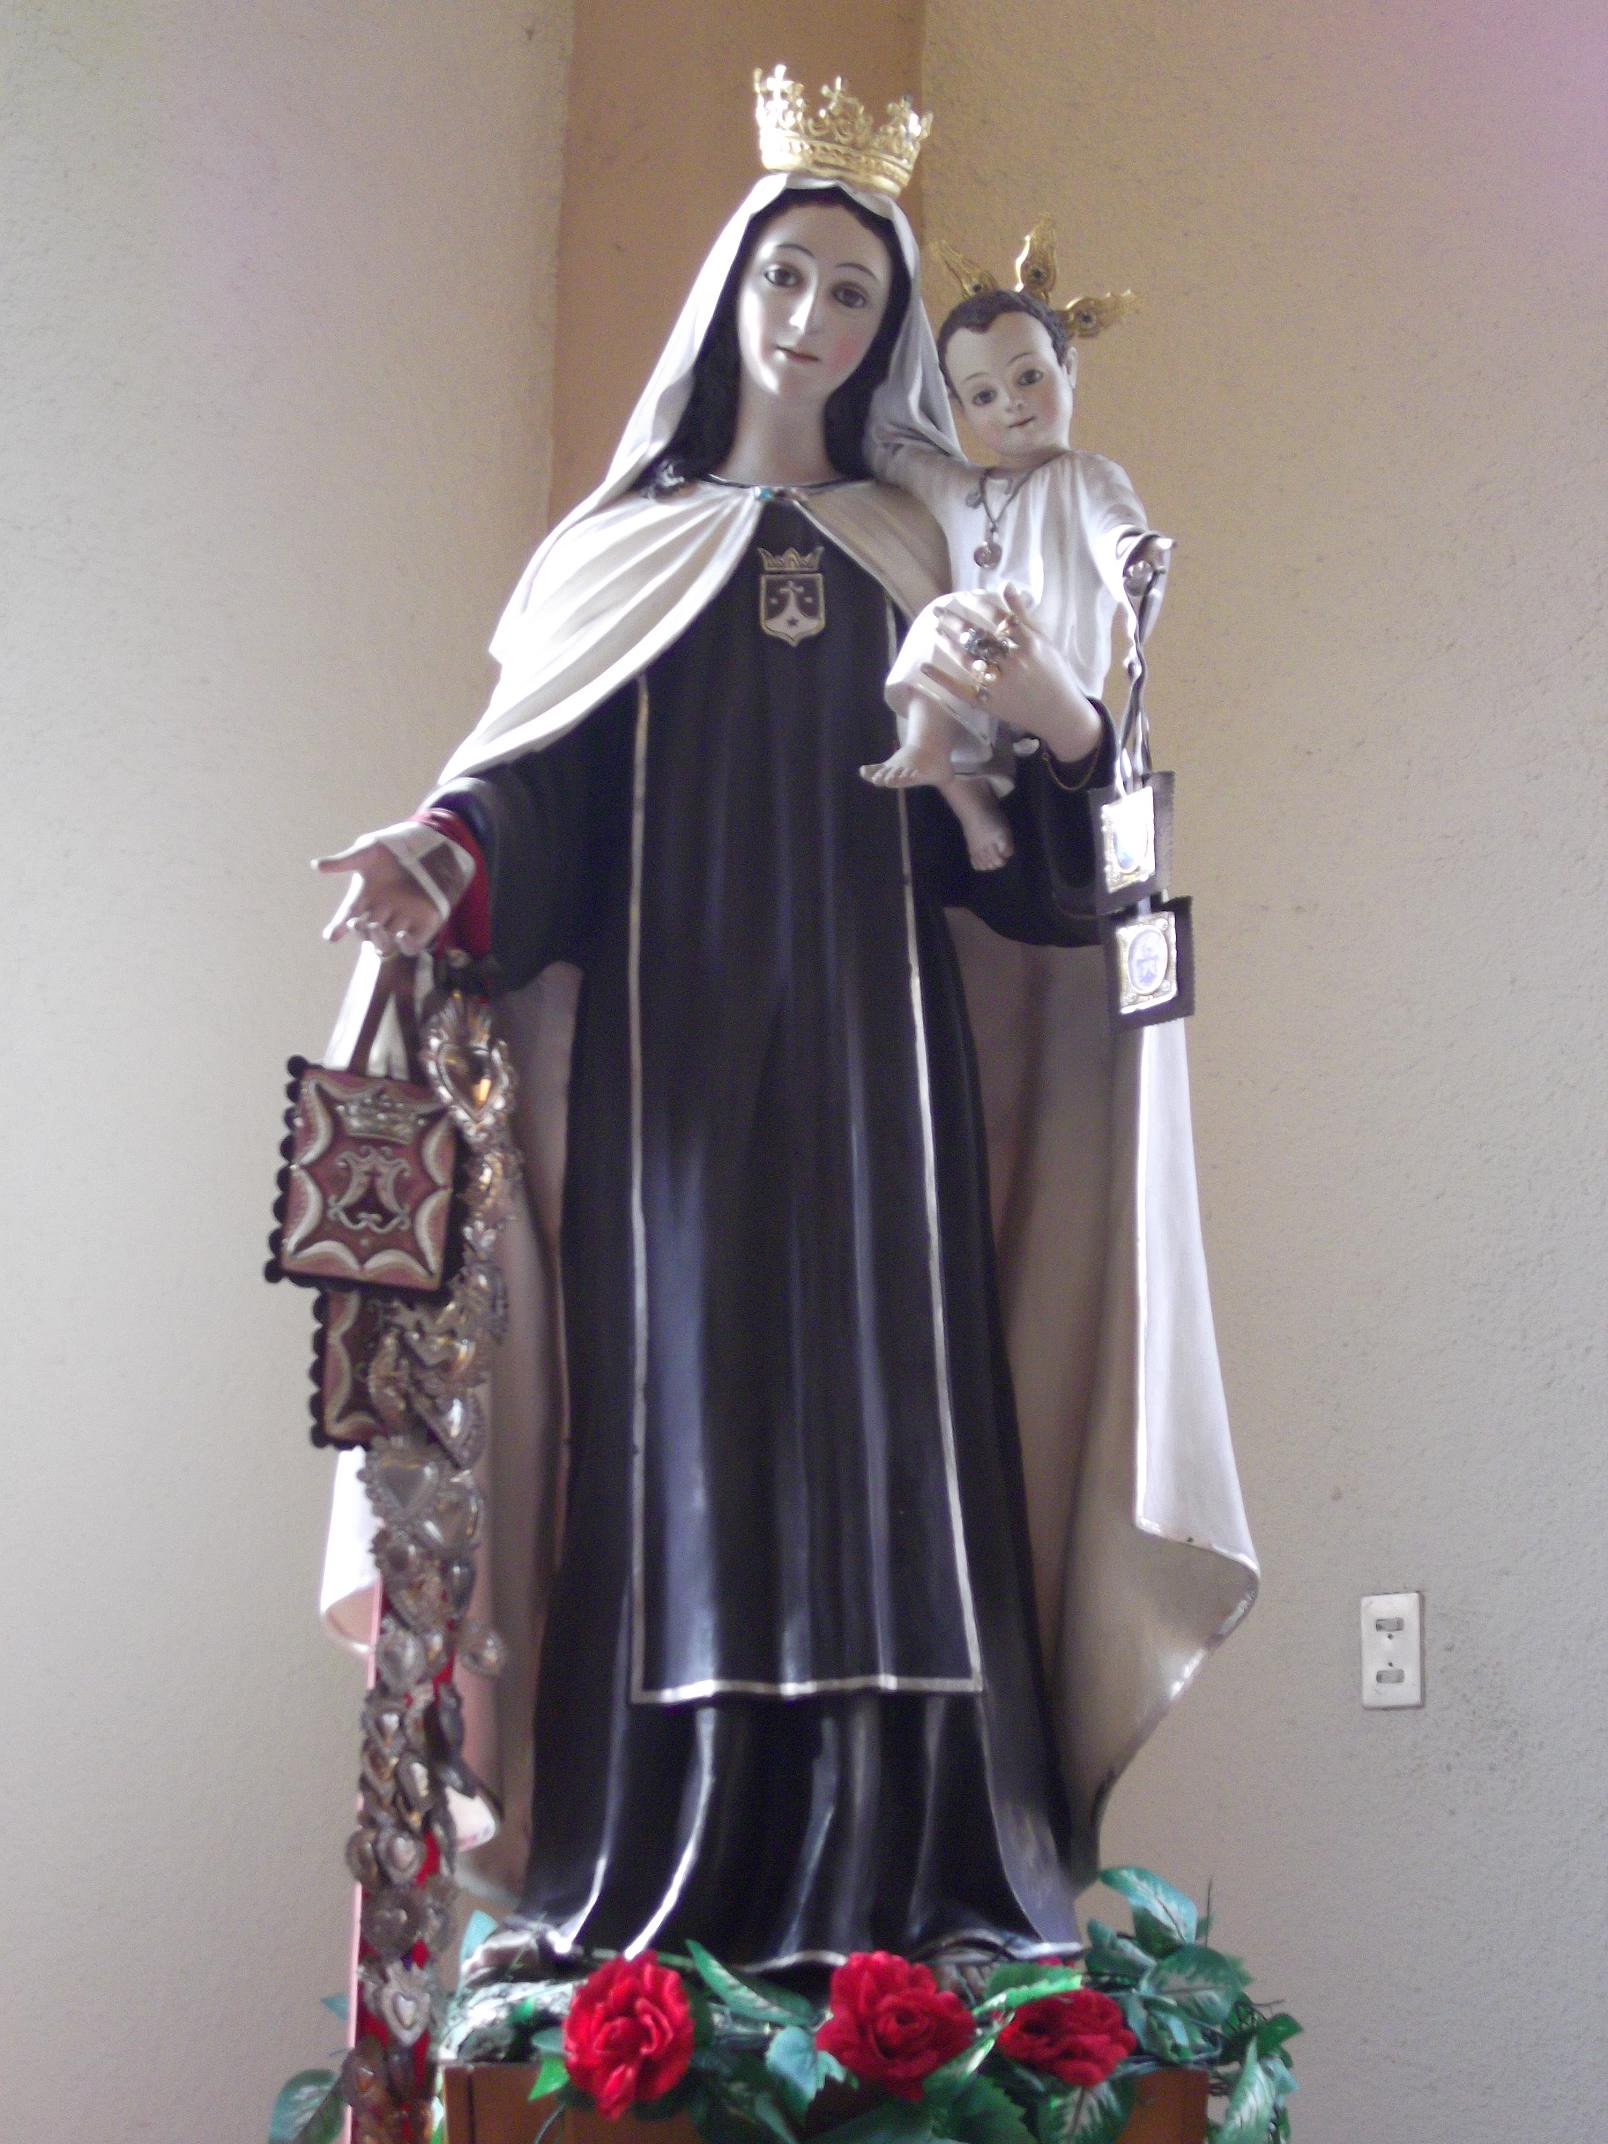 Nuestra Señora del Monte Carmelo krouillong comunion en la mano es sacrilegio